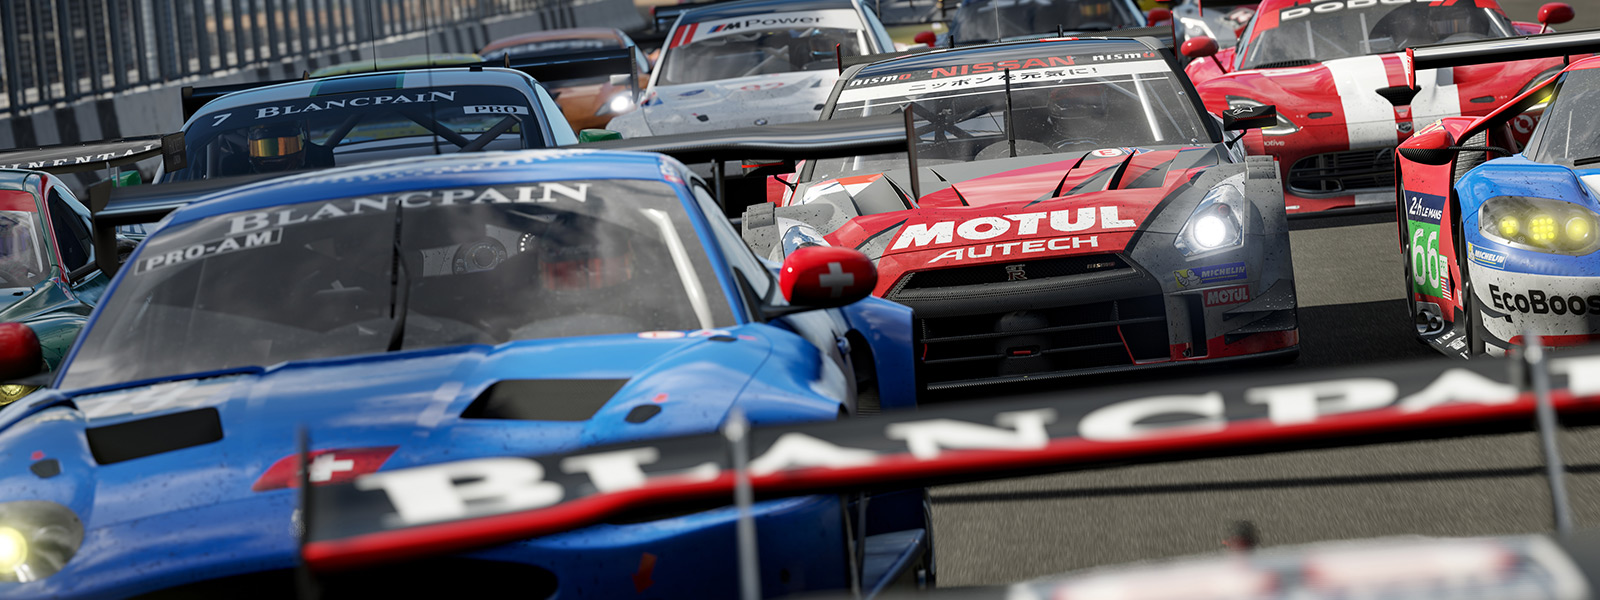 Vista frontal da linha de partida de uma corrida Forza do jogo Forza Motorsport 7